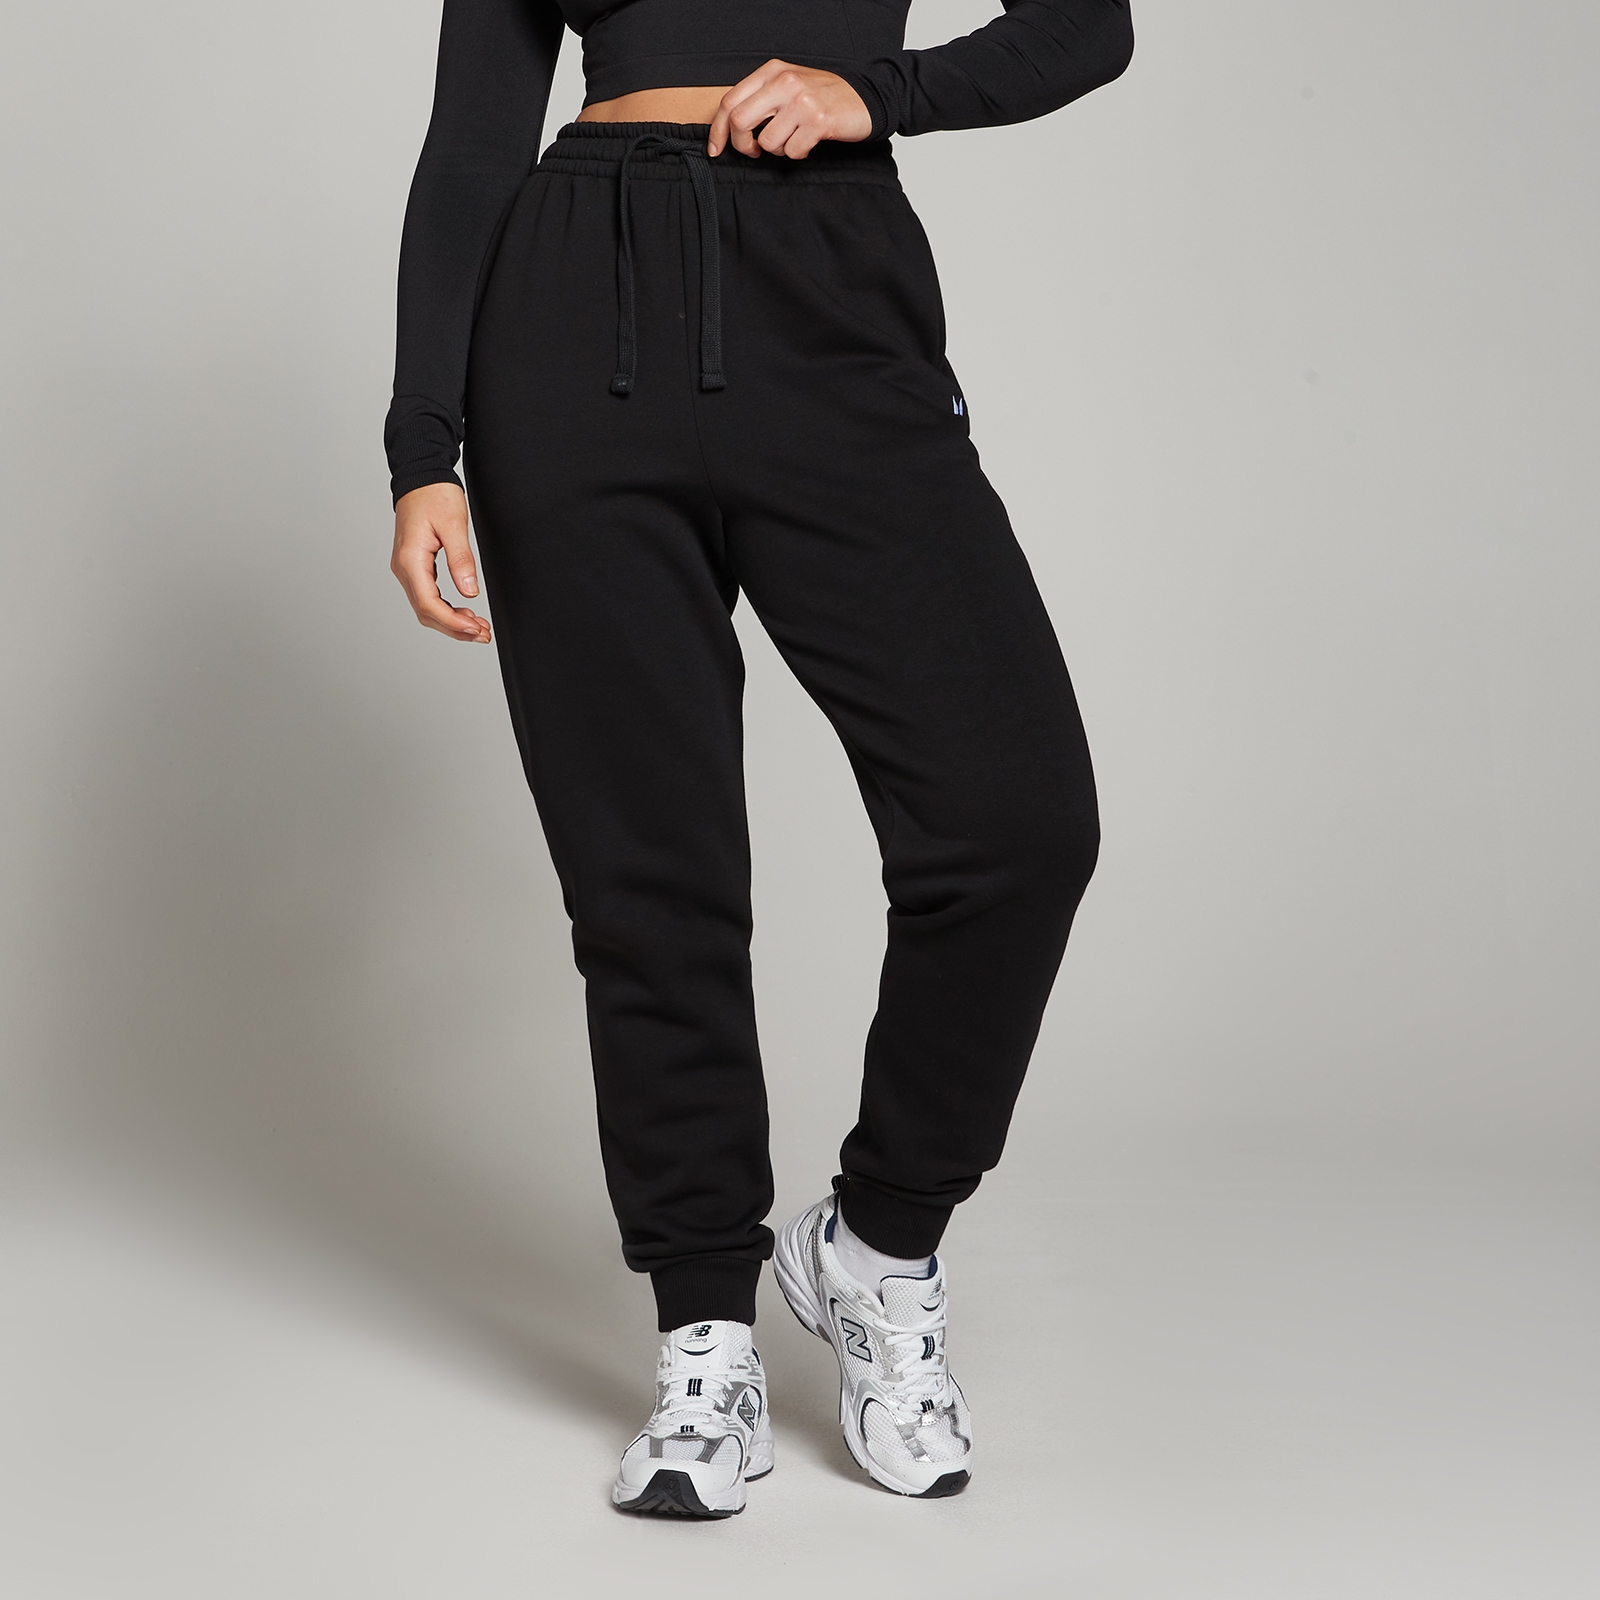 Image of Pantaloni da jogging vestibilità regolare MP Basics da donna - Neri - M